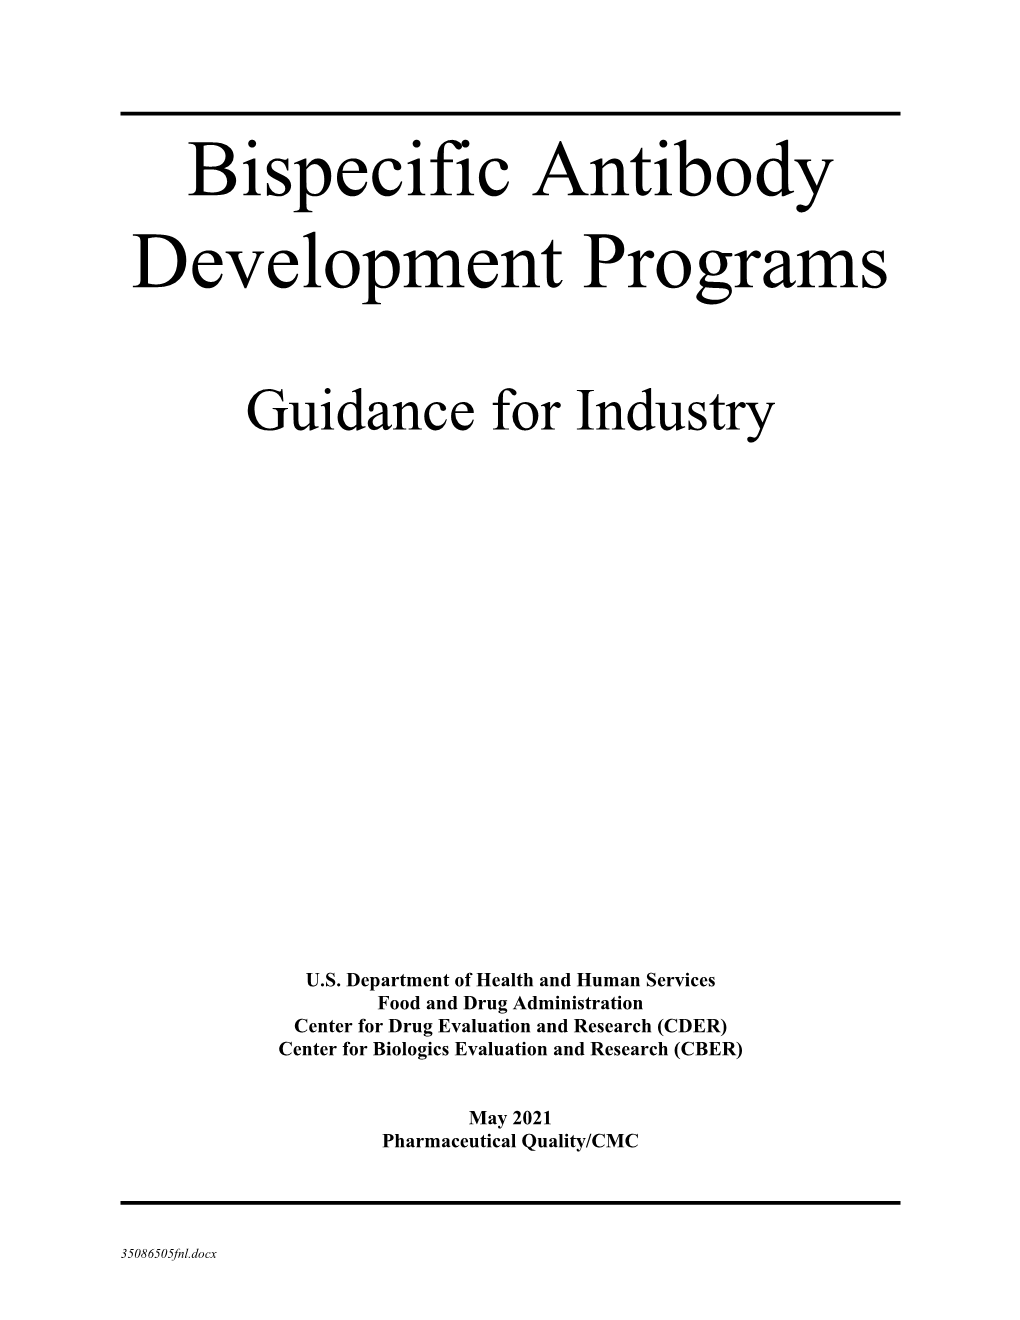 Bispecific Antibody Development Programs